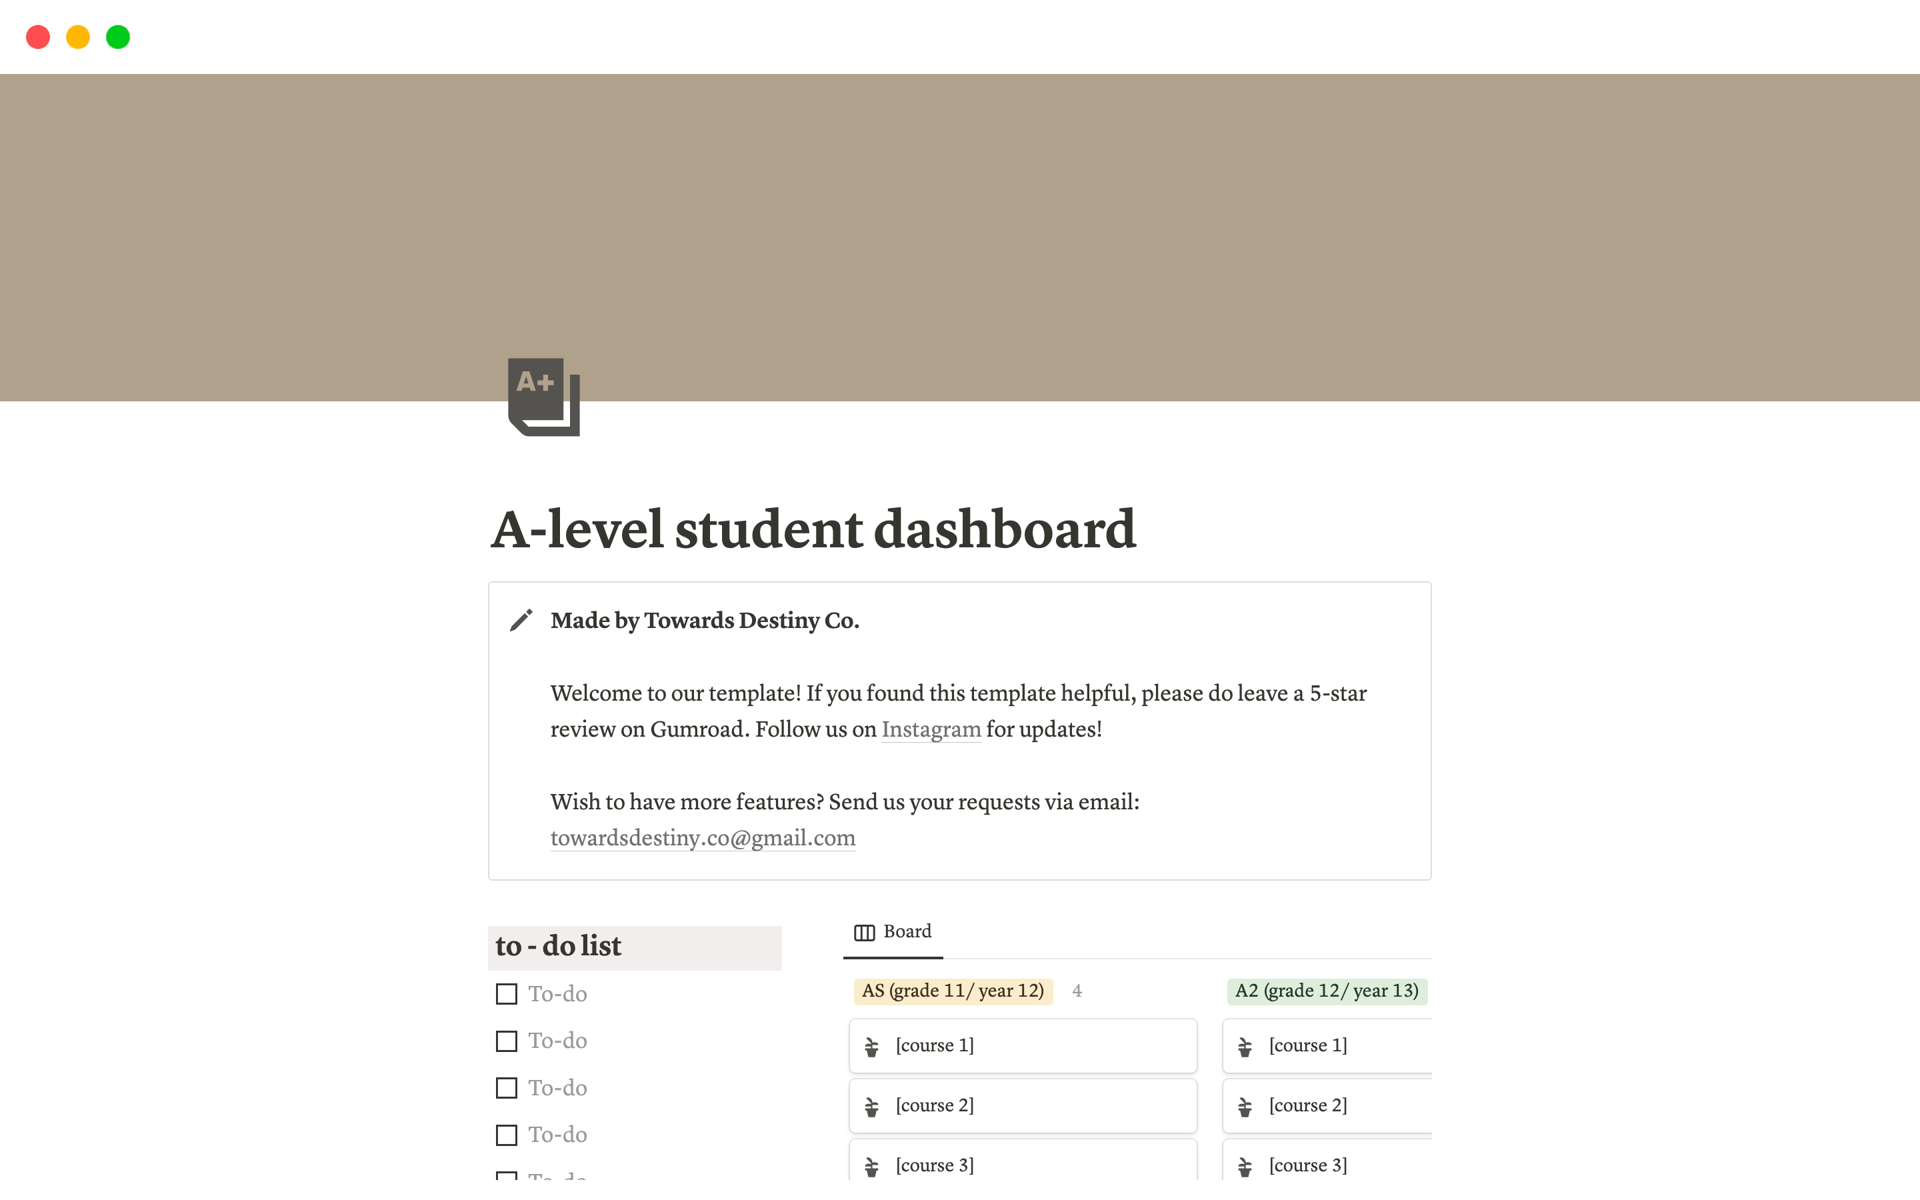 Vista previa de una plantilla para A-level student dashboard